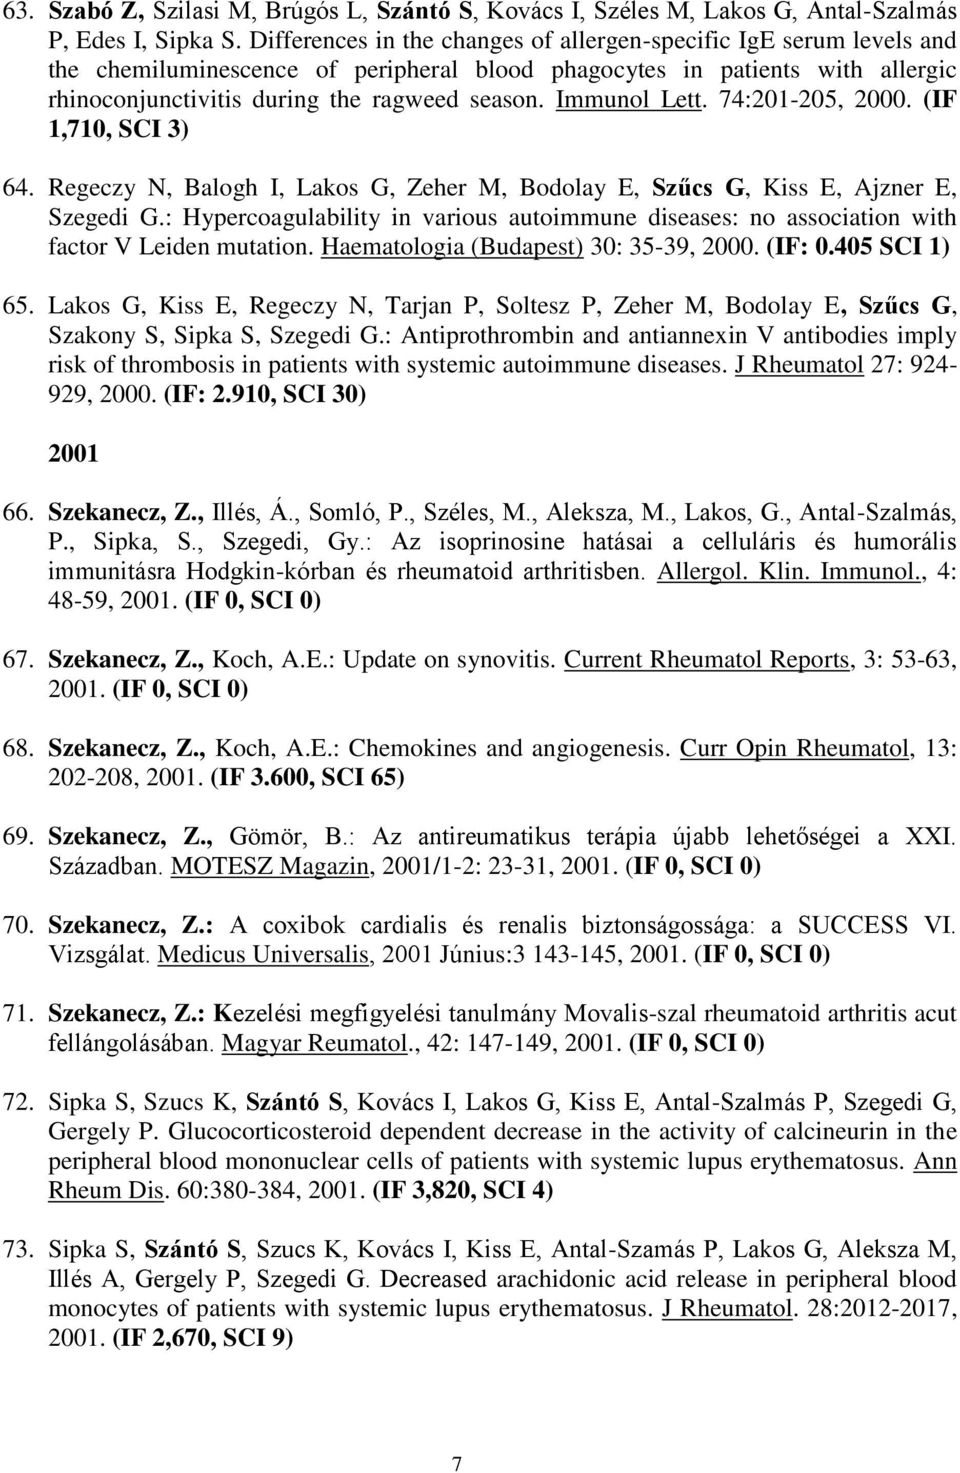 Immunol Lett. 74:201-205, 2000. (IF 1,710, SCI 3) 64. Regeczy N, Balogh I, Lakos G, Zeher M, Bodolay E, Szűcs G, Kiss E, Ajzner E, Szegedi G.